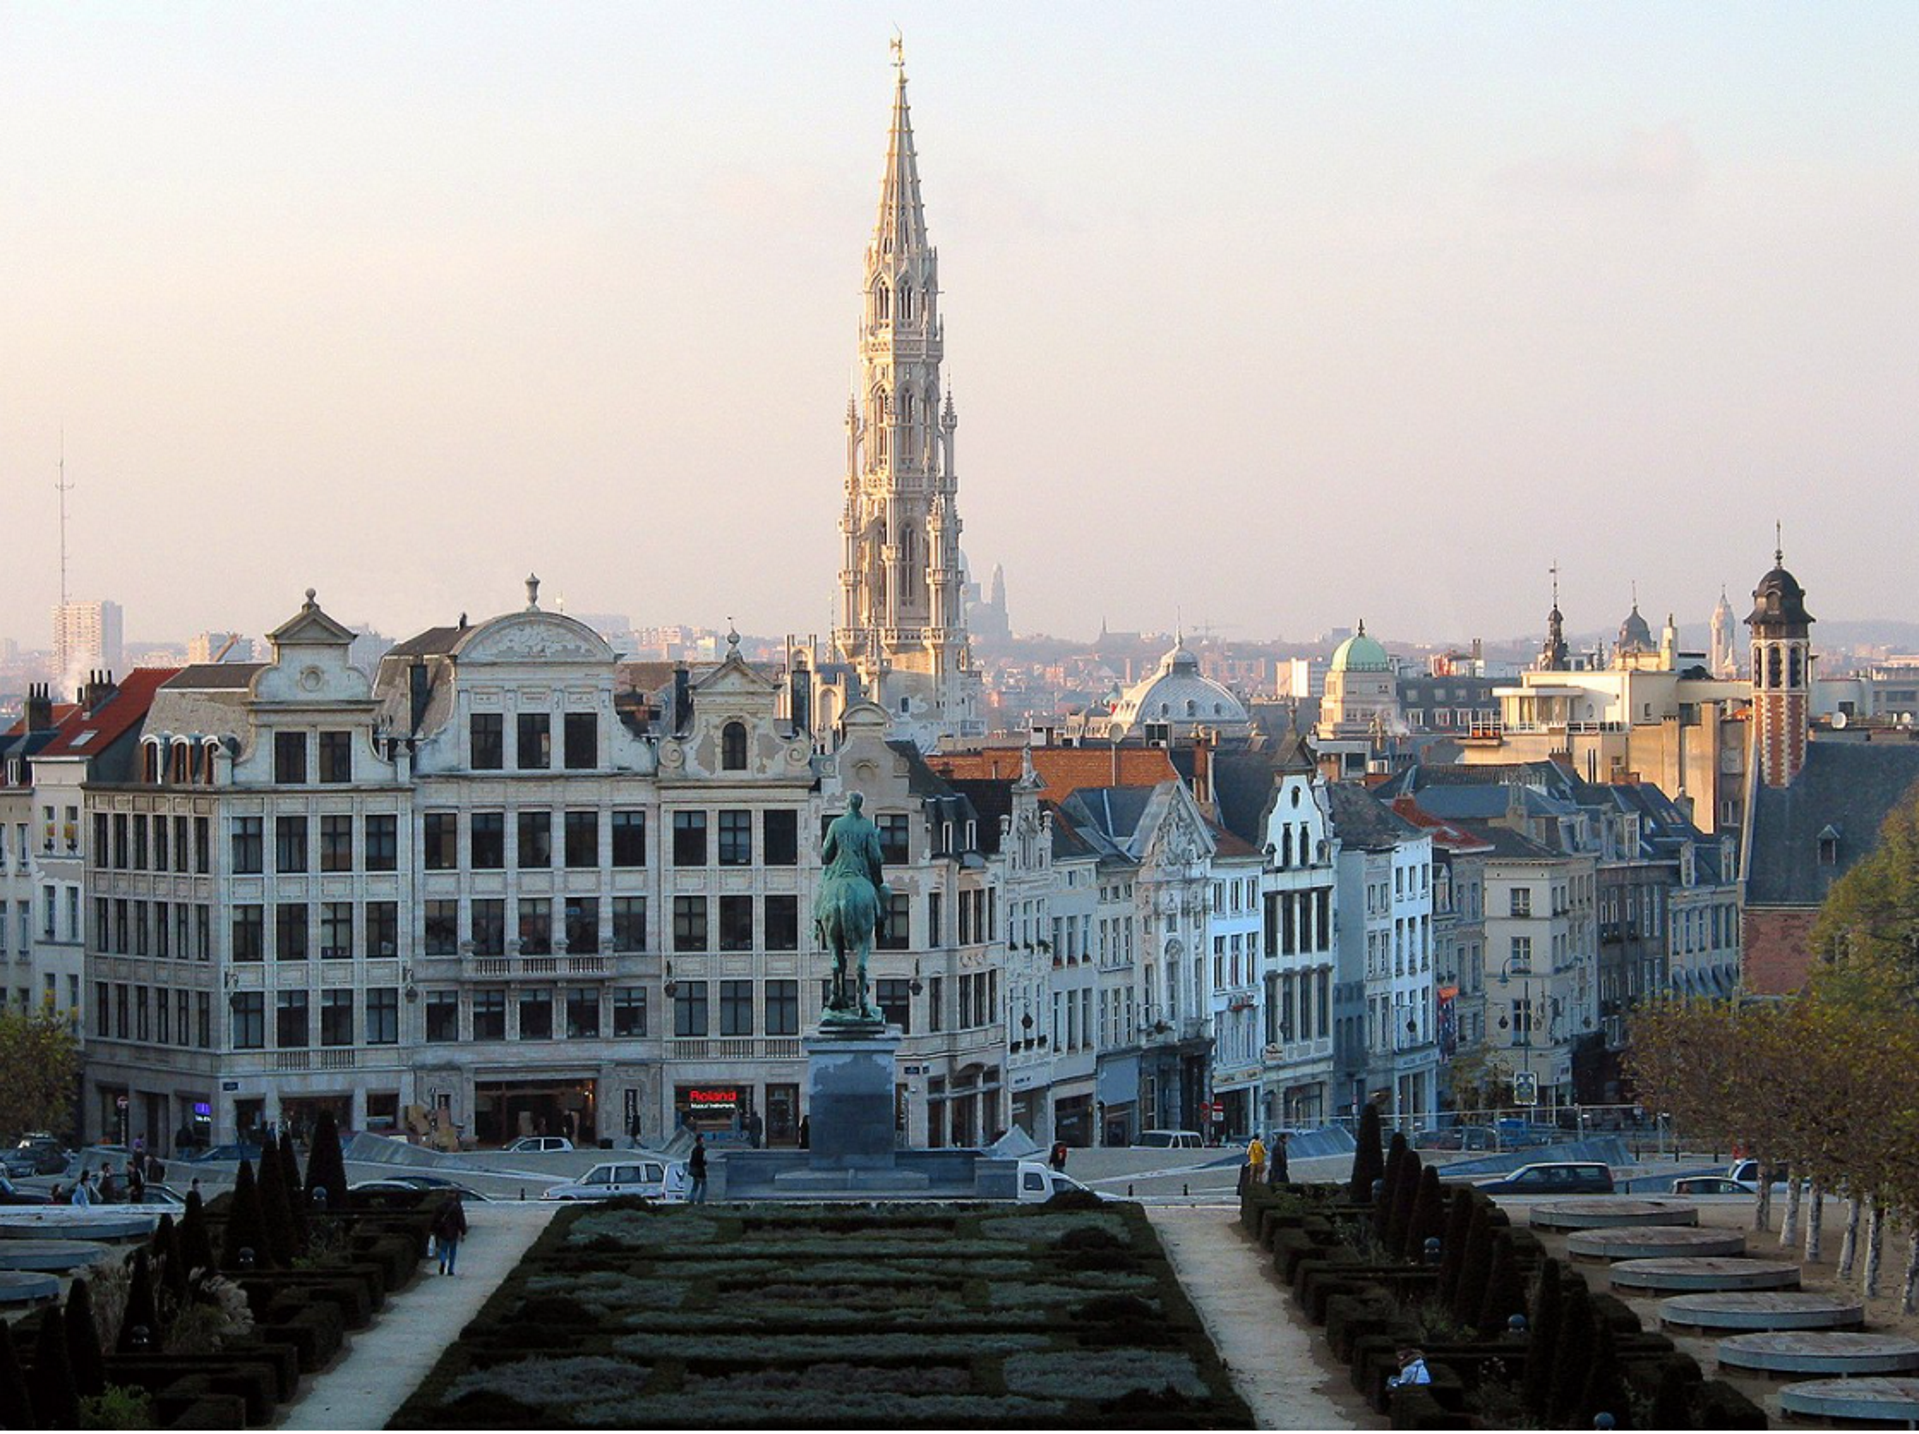 Bélgica decreta el toque de queda nocturno, y cierra bares y restaurantes